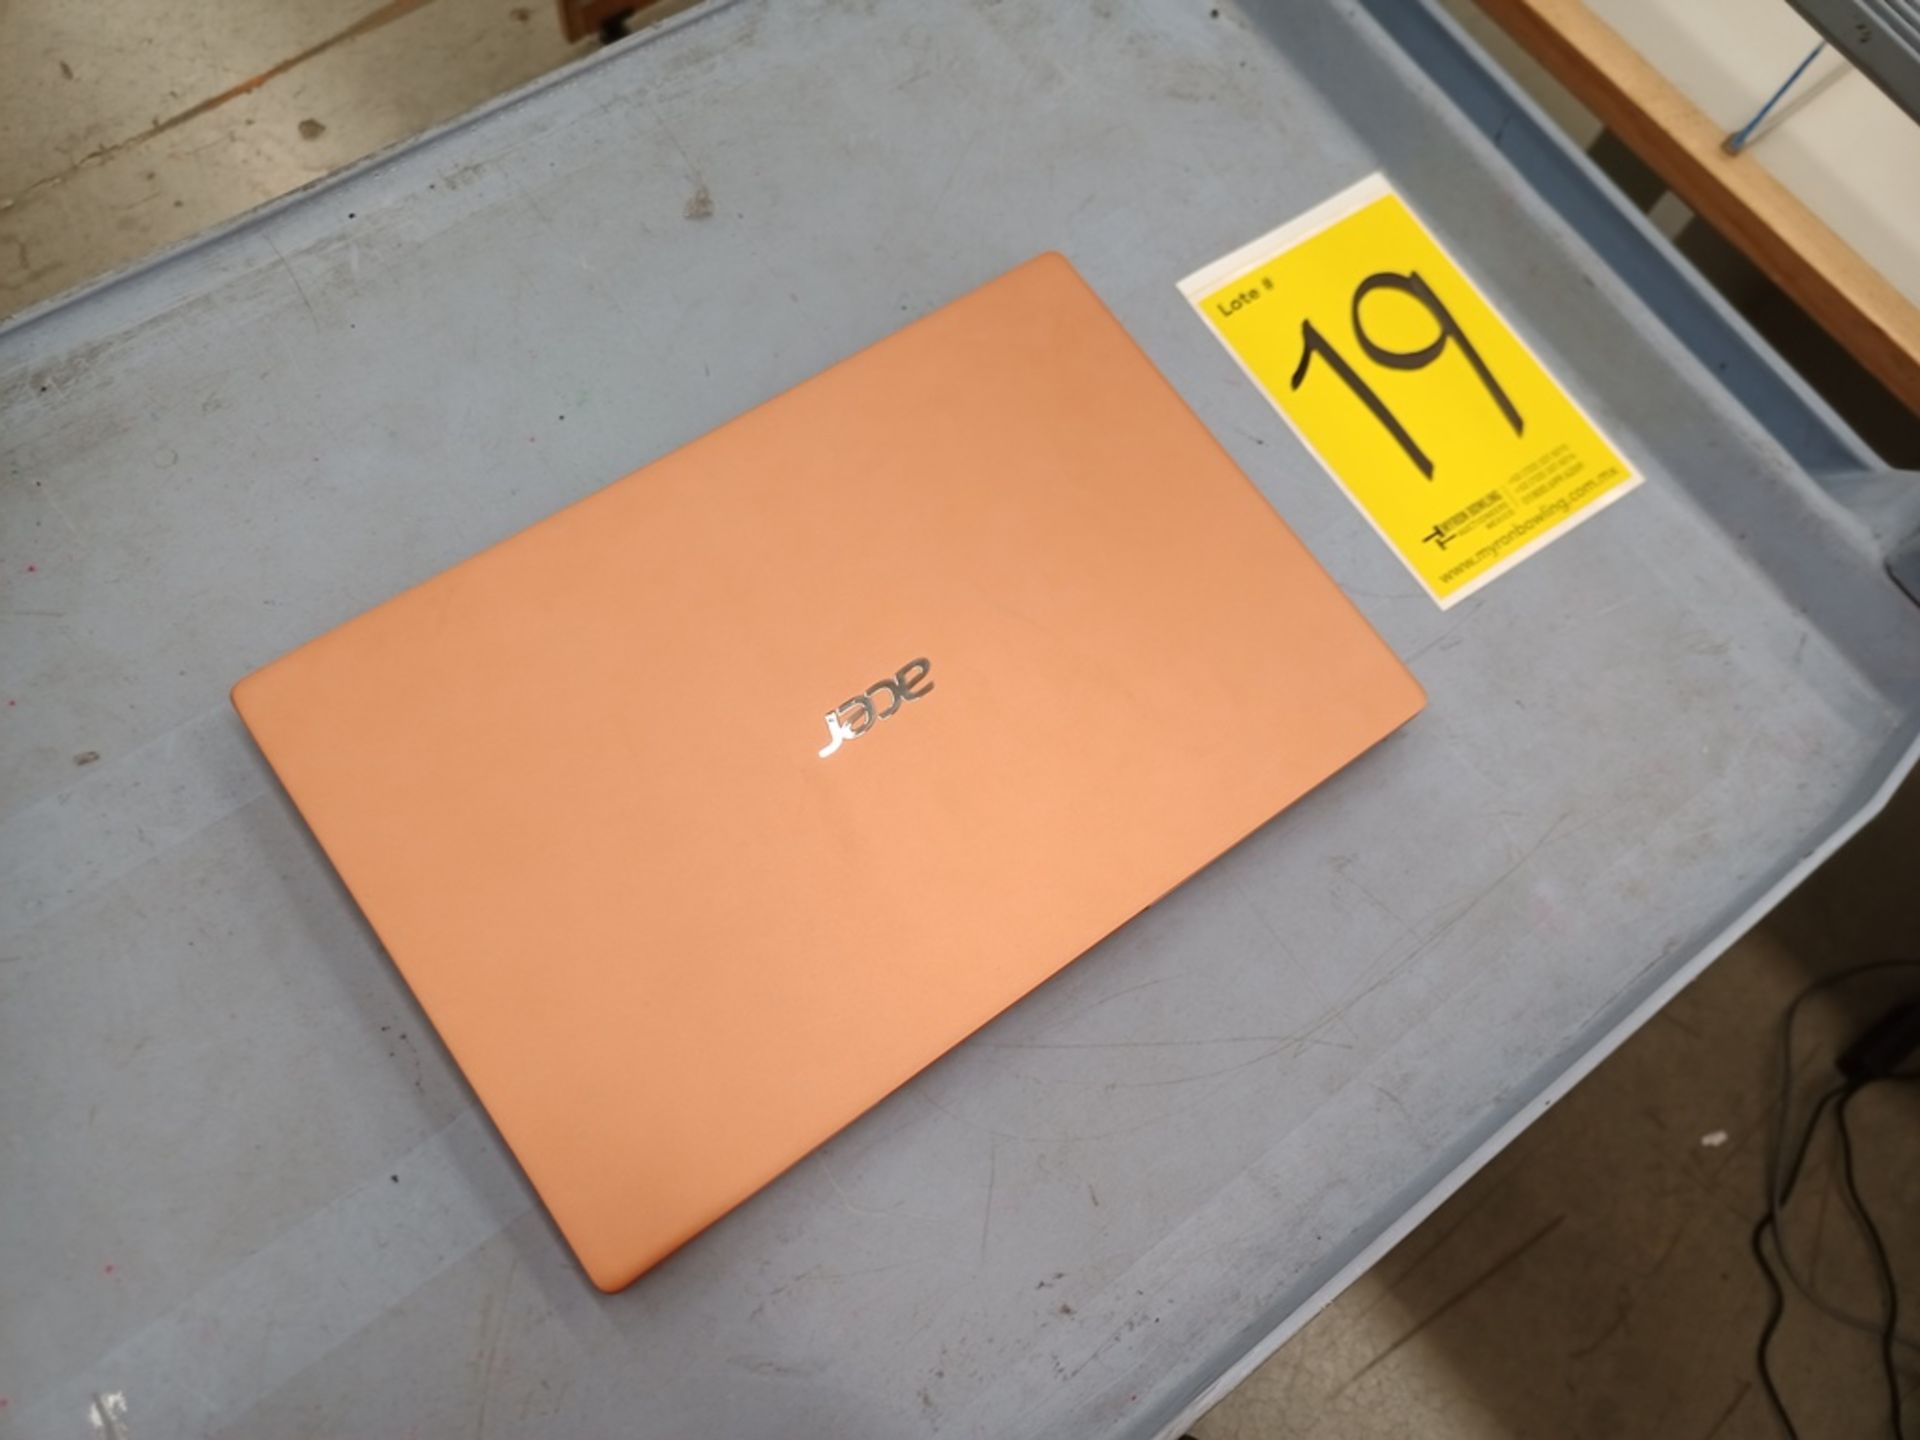 1 Computadora tipo laptop Marca ACER, Modelo SF314595959, Serie NXA0RAL001115100303400, Color Melon - Image 19 of 21